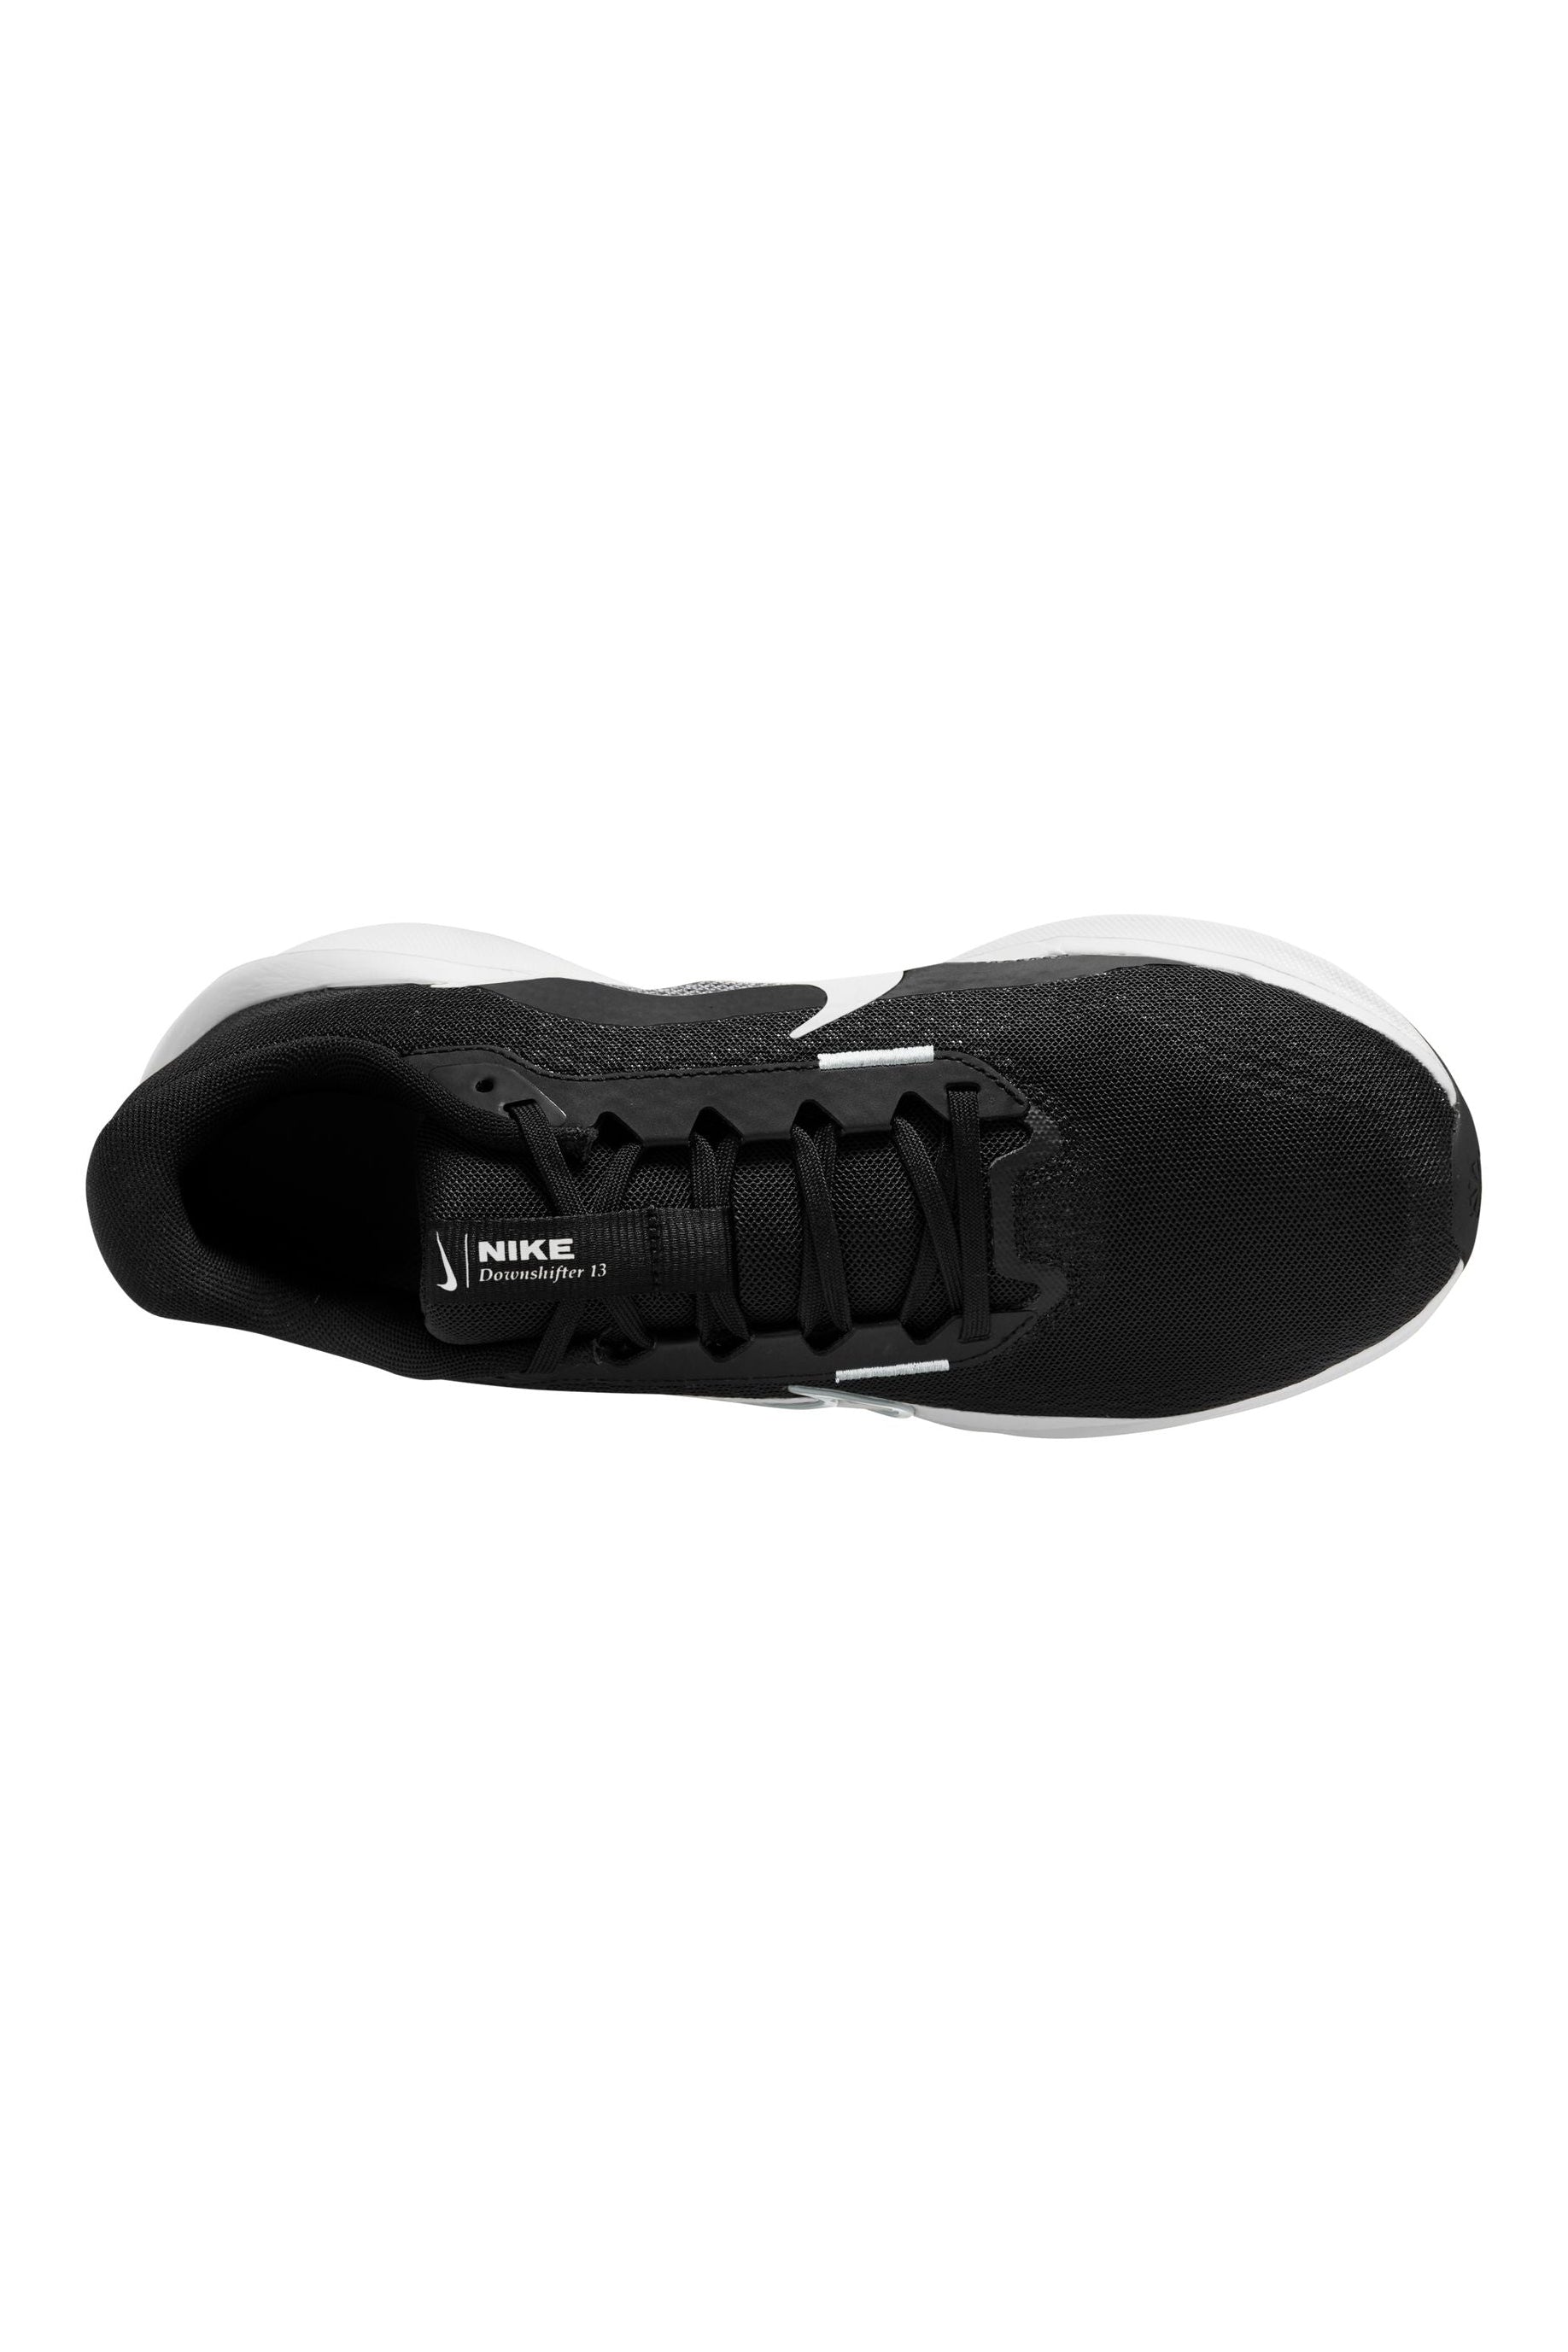 נעלי ספורט לגברים DOWNSHIFTER 13 בצבע שחור ולבן